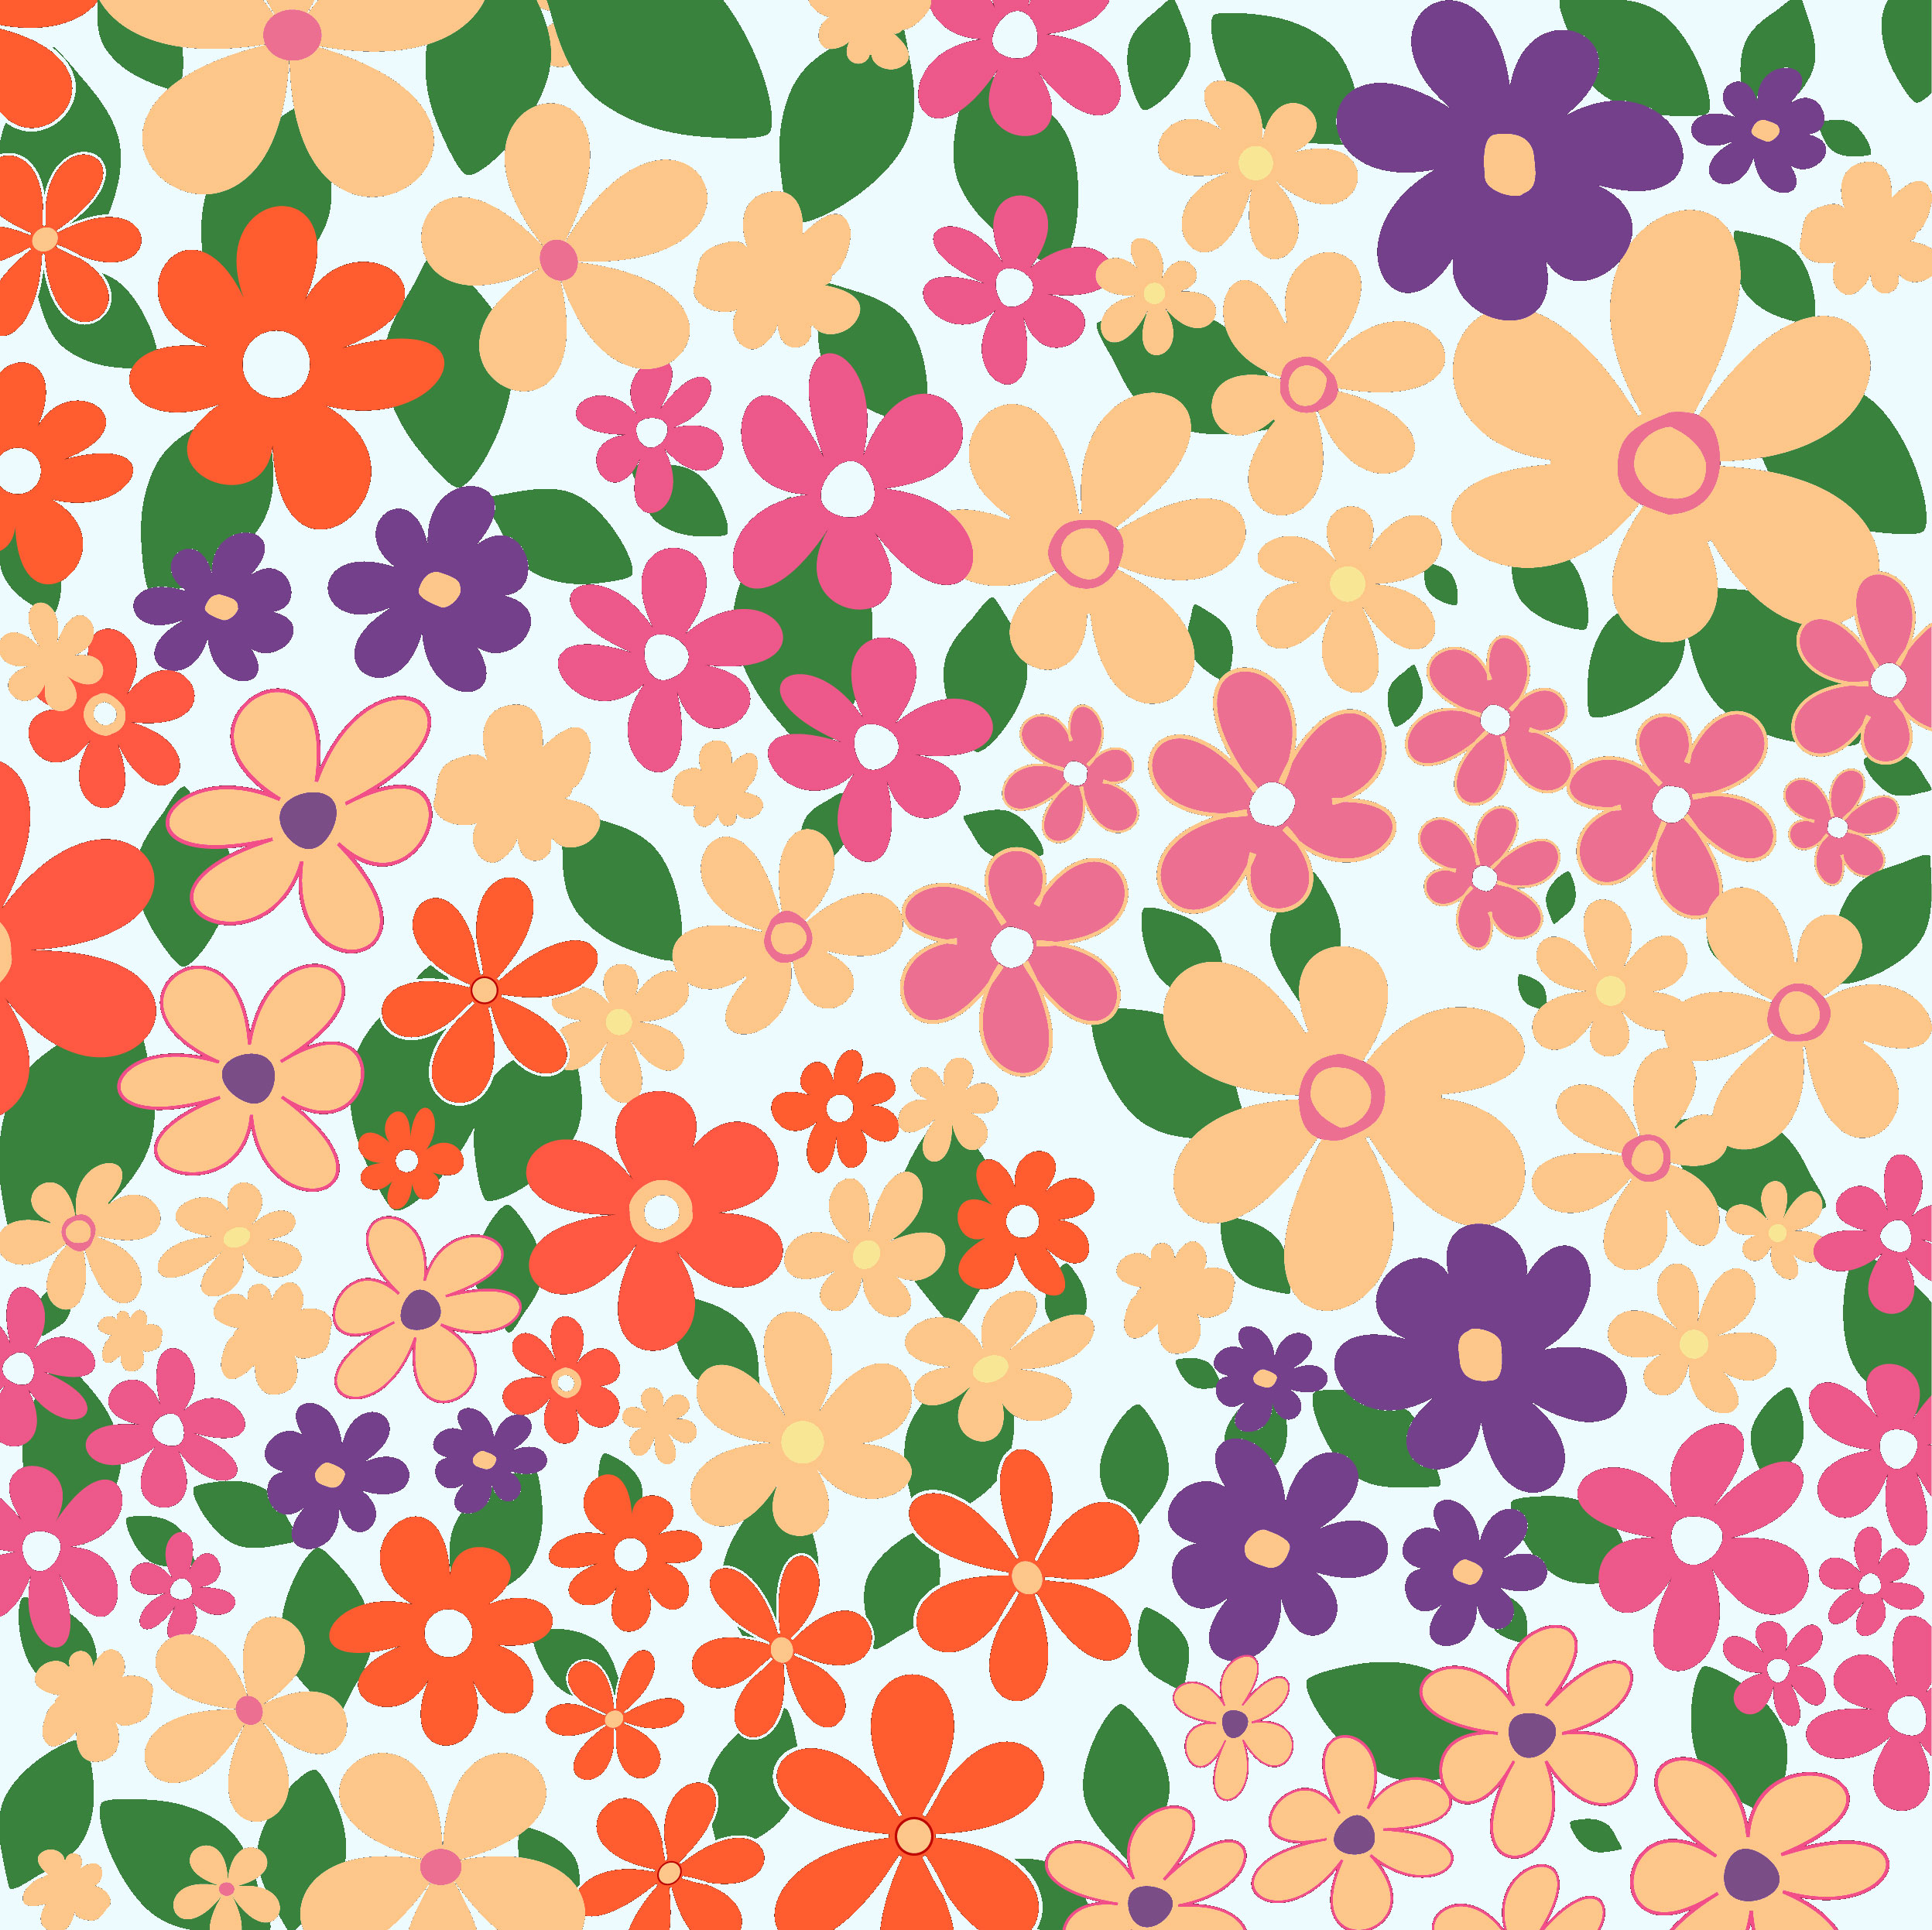 壁紙 背景イラスト 花の模様 柄 パターン No 115 色とりどりの花